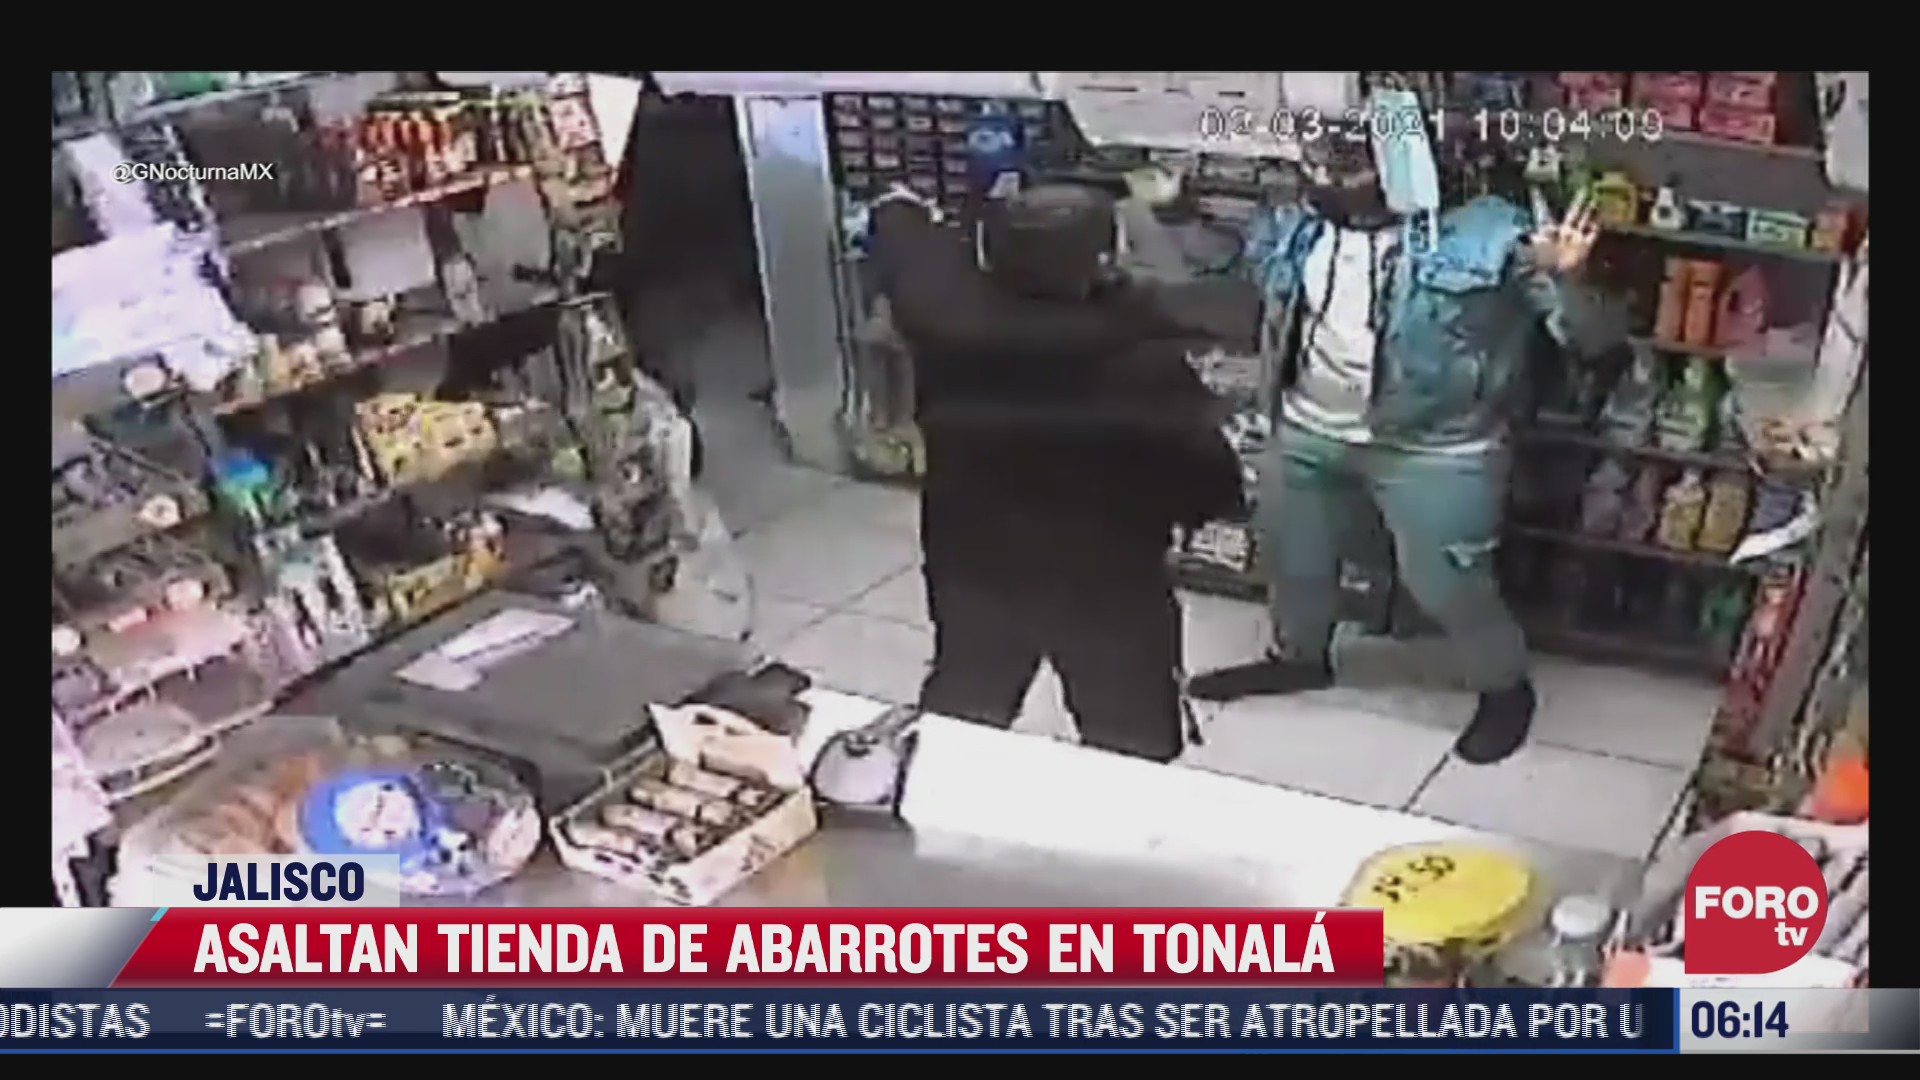 tres sujetos asaltaron una tienda de abarrotes en jalisco